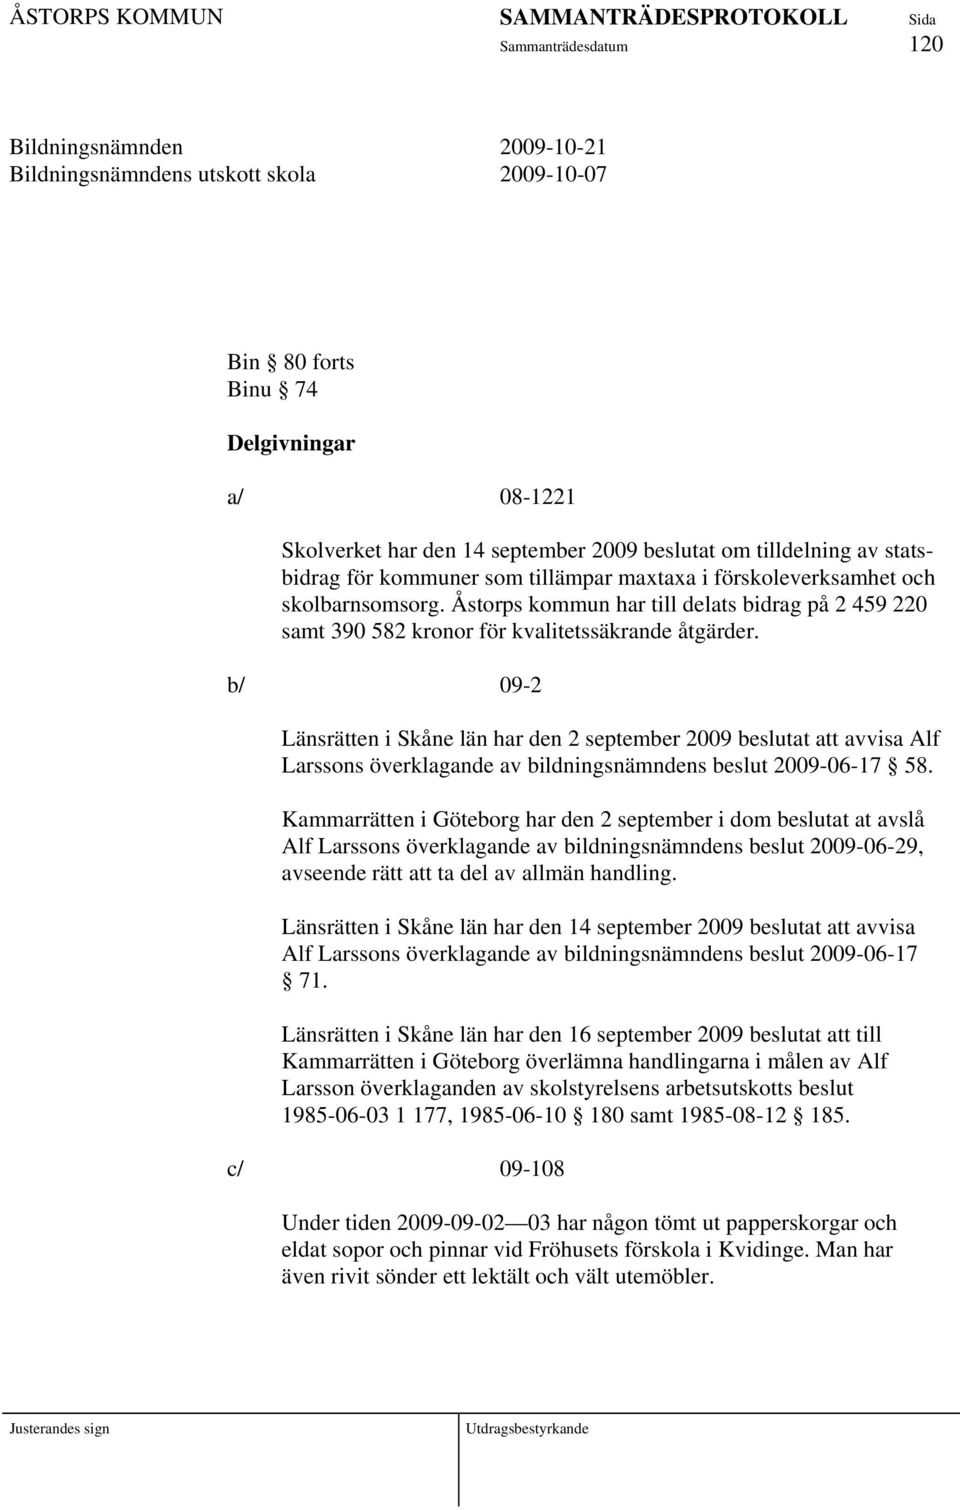 b/ 09-2 Länsrätten i Skåne län har den 2 september 2009 beslutat att avvisa Alf Larssons överklagande av bildningsnämndens beslut 2009-06-17 58.